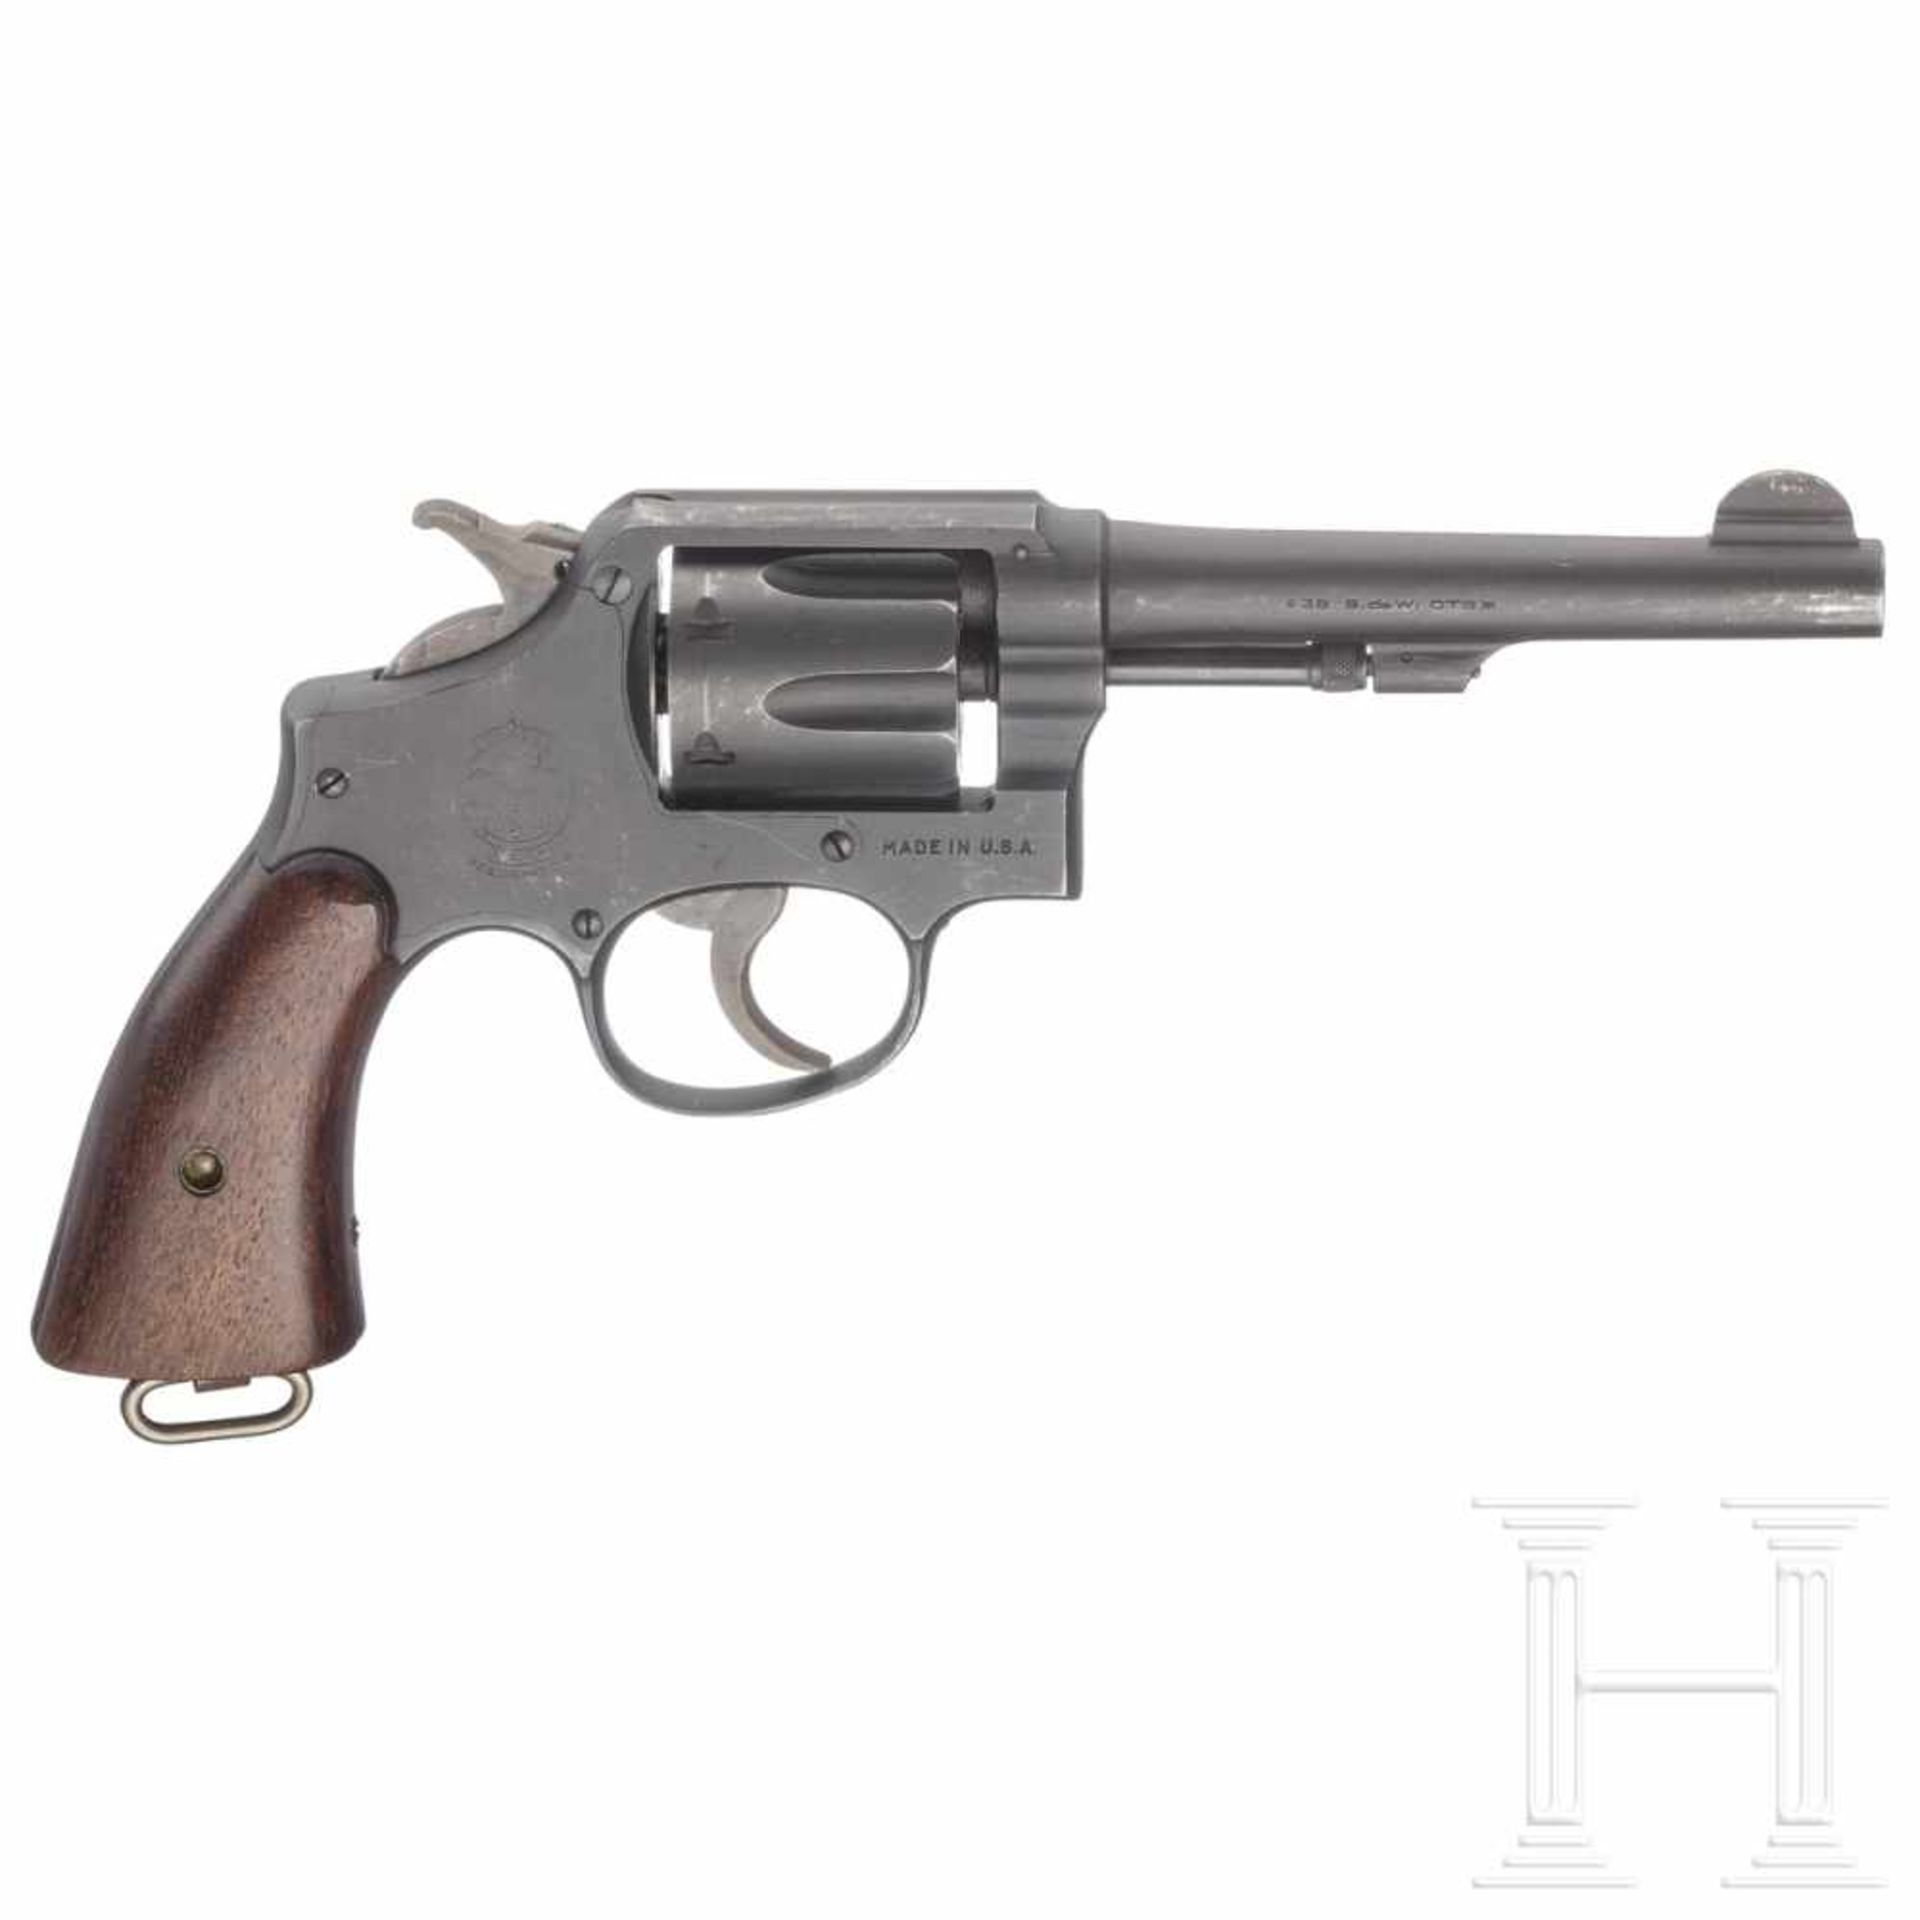 Smith & Wesson M & P, Victory-ModellKal. .38 S&W, Nr. V 671131, nummerngleich. Blanker Lauf, Länge - Bild 2 aus 2